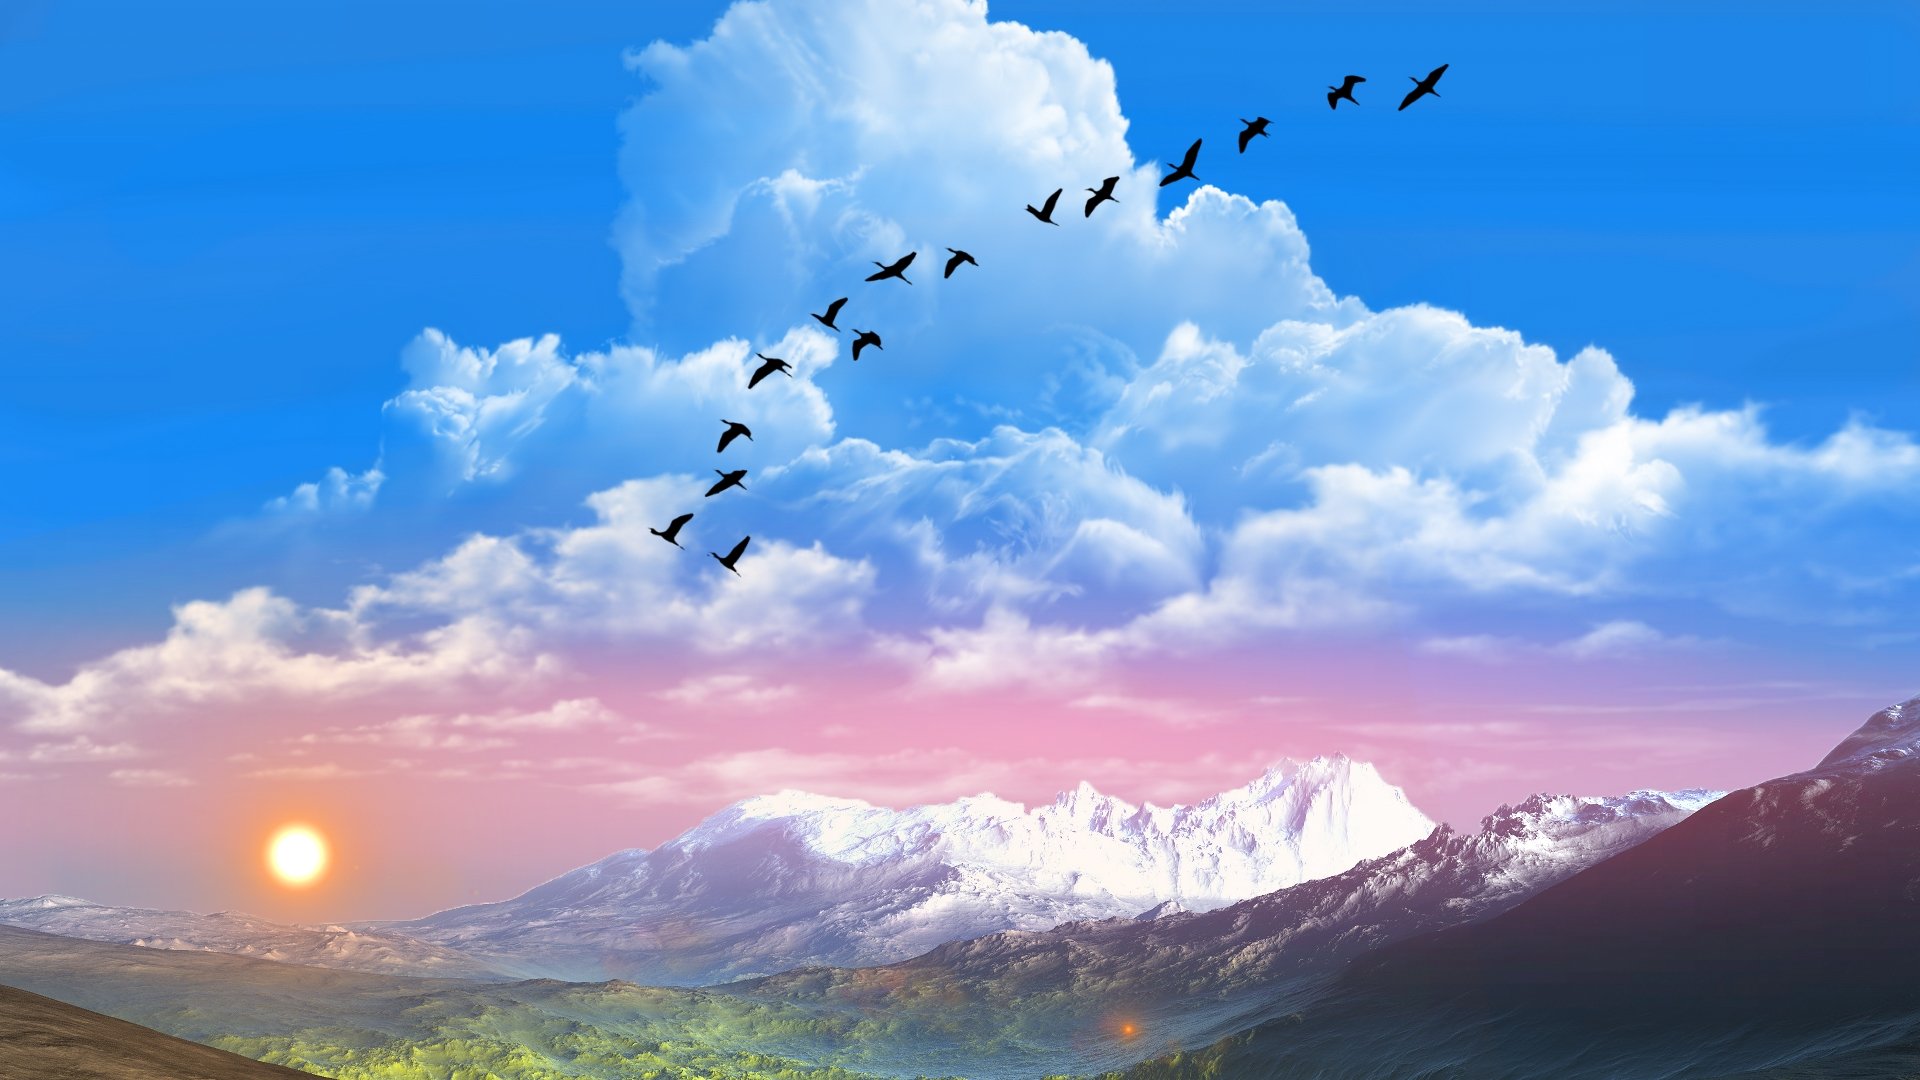 Wallpapers sun raise nature landscape clouds birds Montains